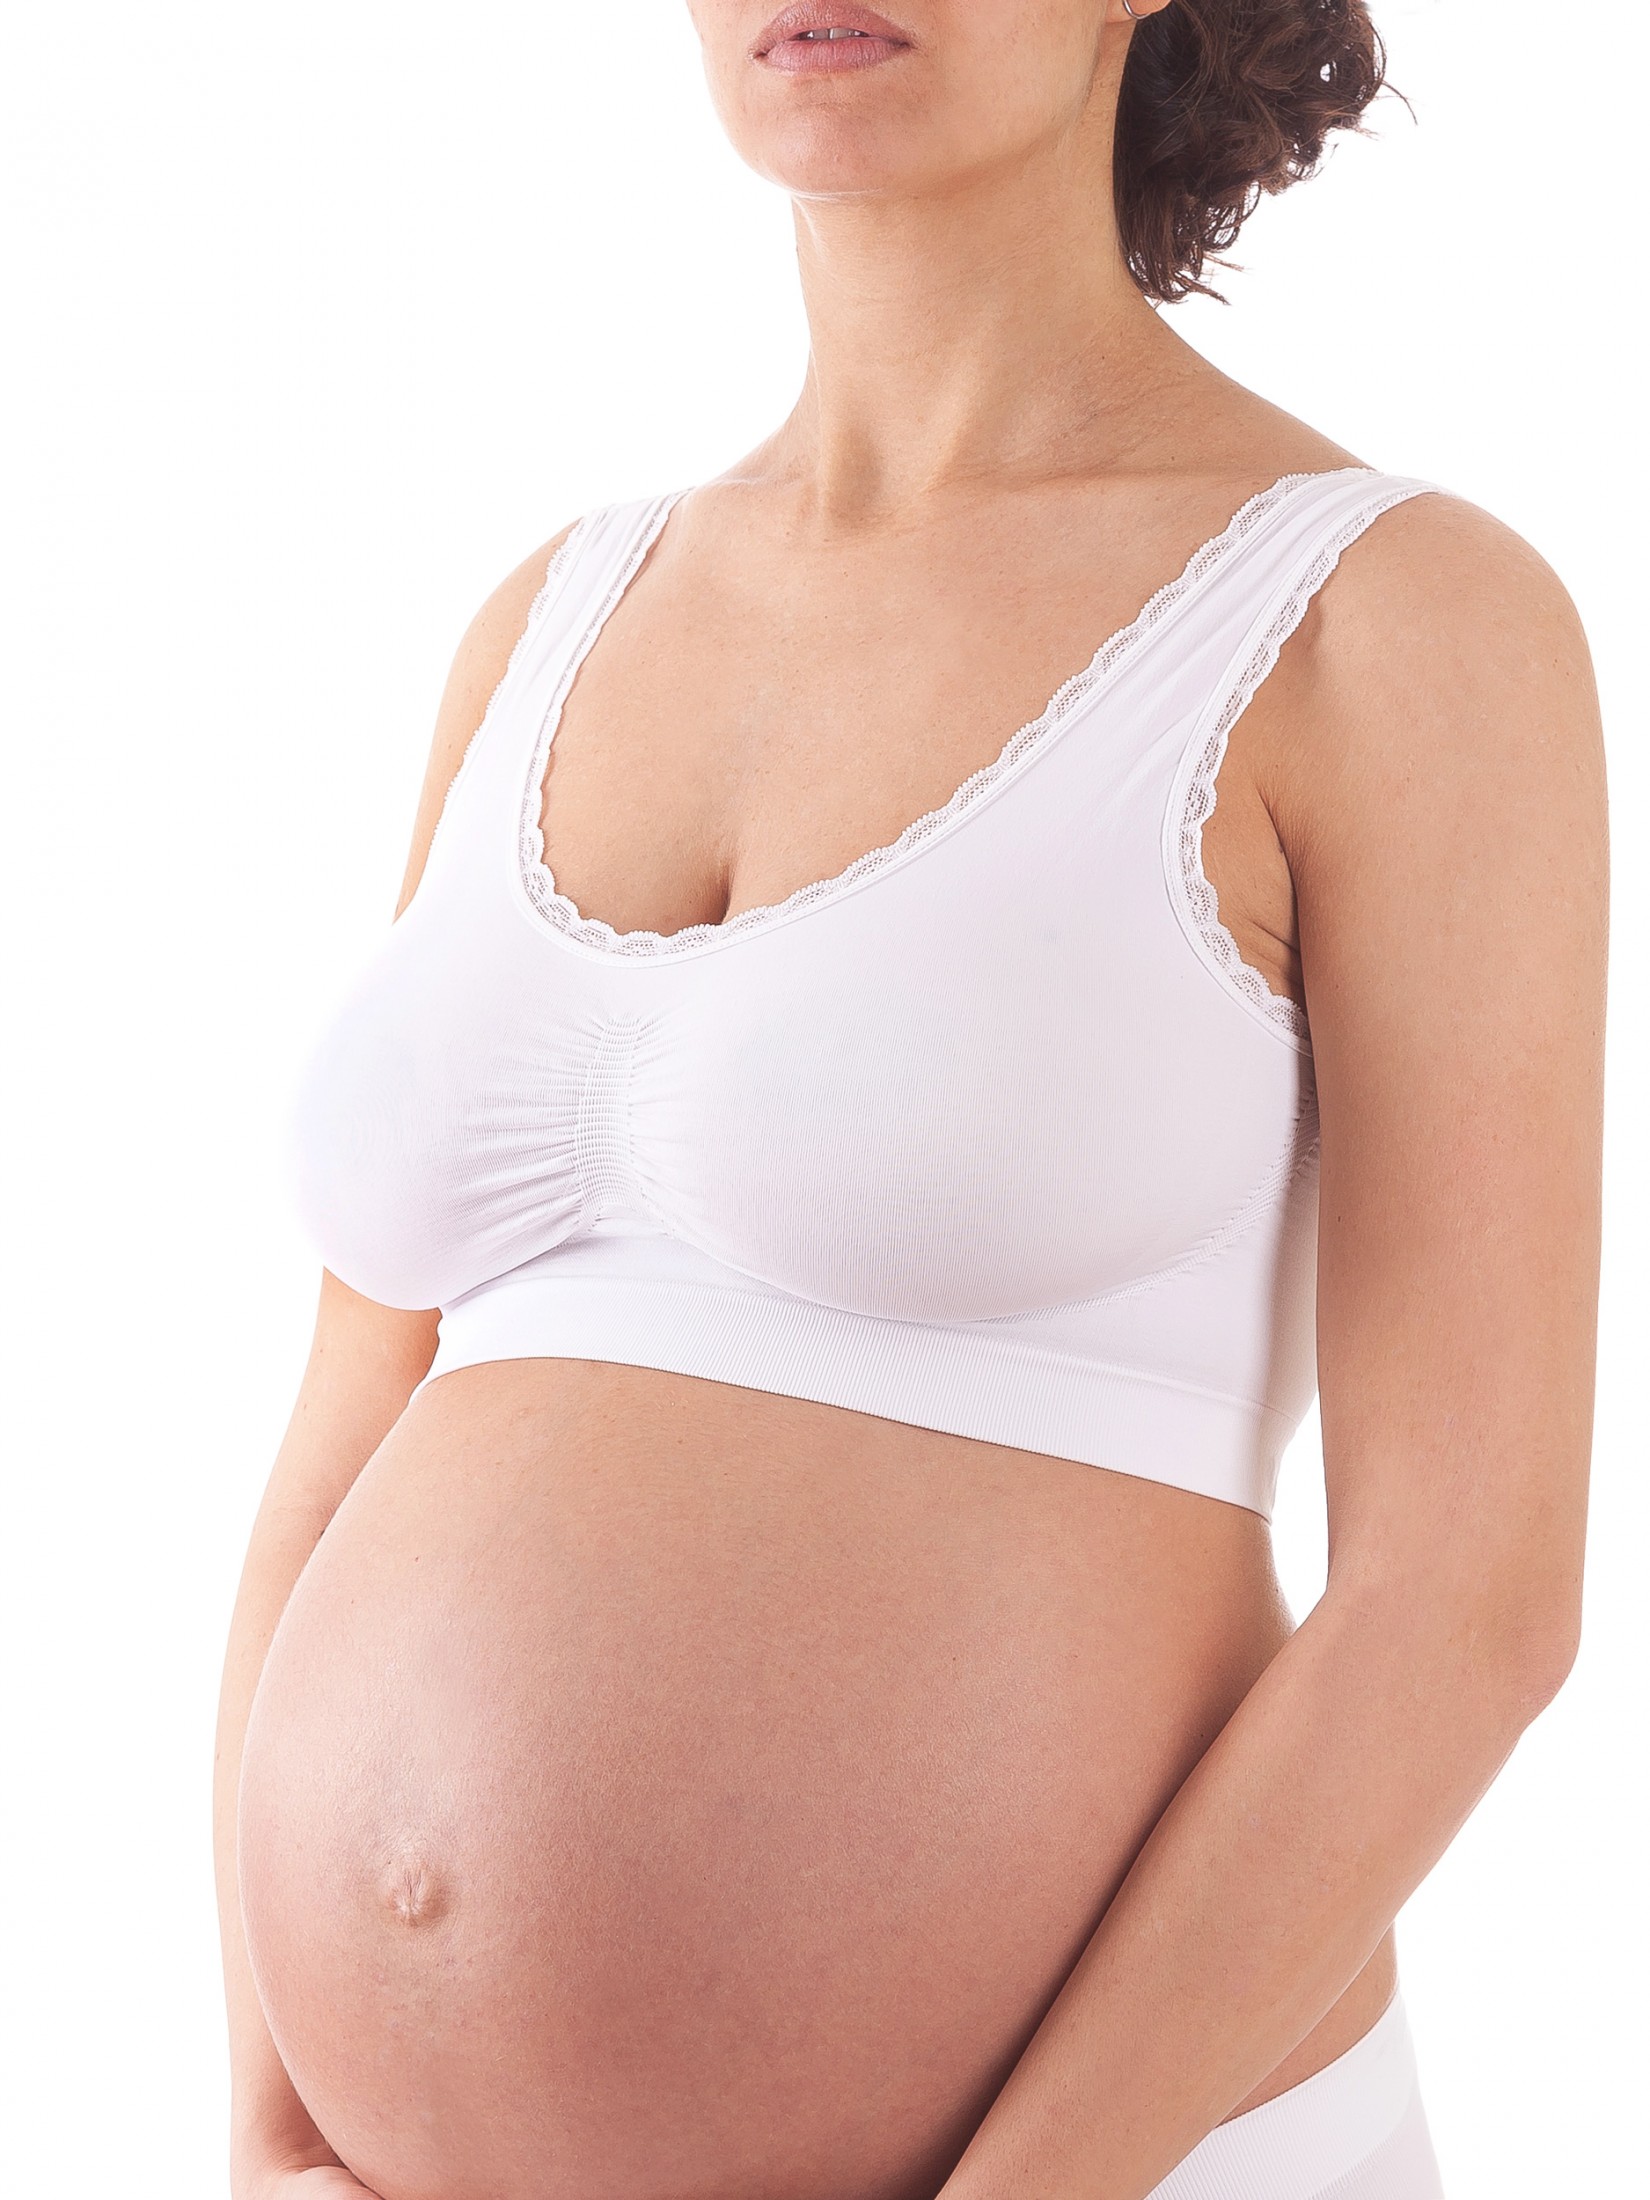 Бюстгальтер для беременных женский Bellissimo Reggiseno Top Ultra Comfort белый S/M